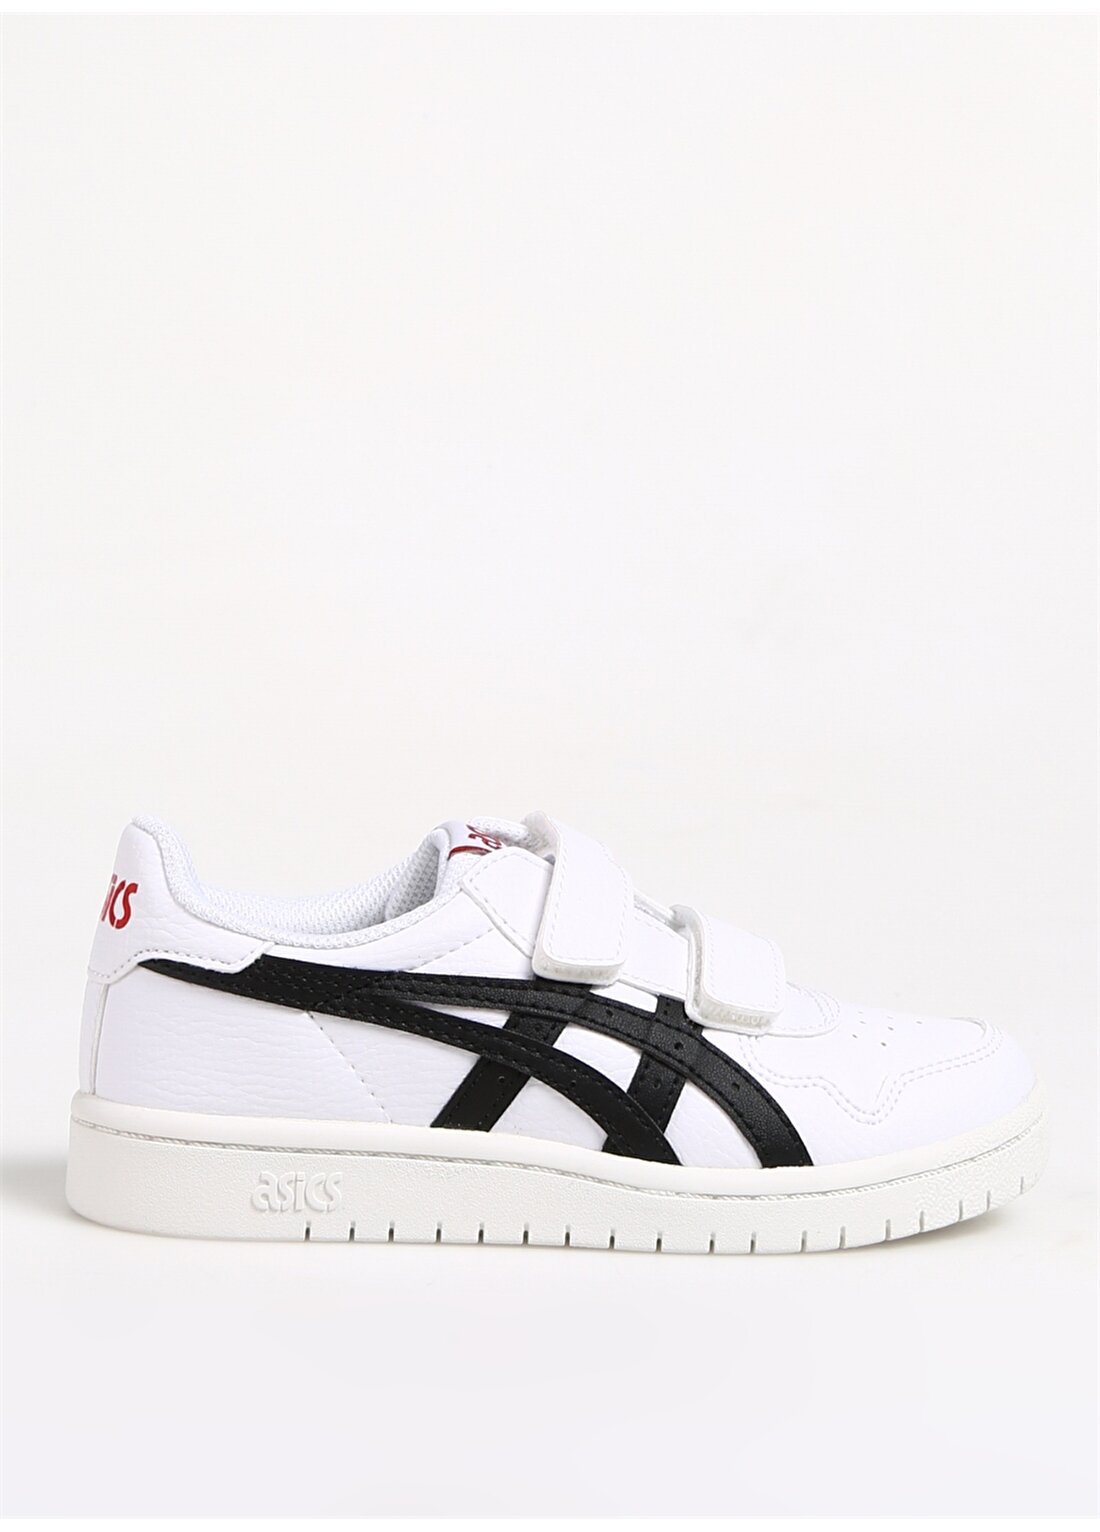 Asics Japan S Beyaz - Siyah Erkek Çocuk Yürüyüş Ayakkabısı 1204A008-124